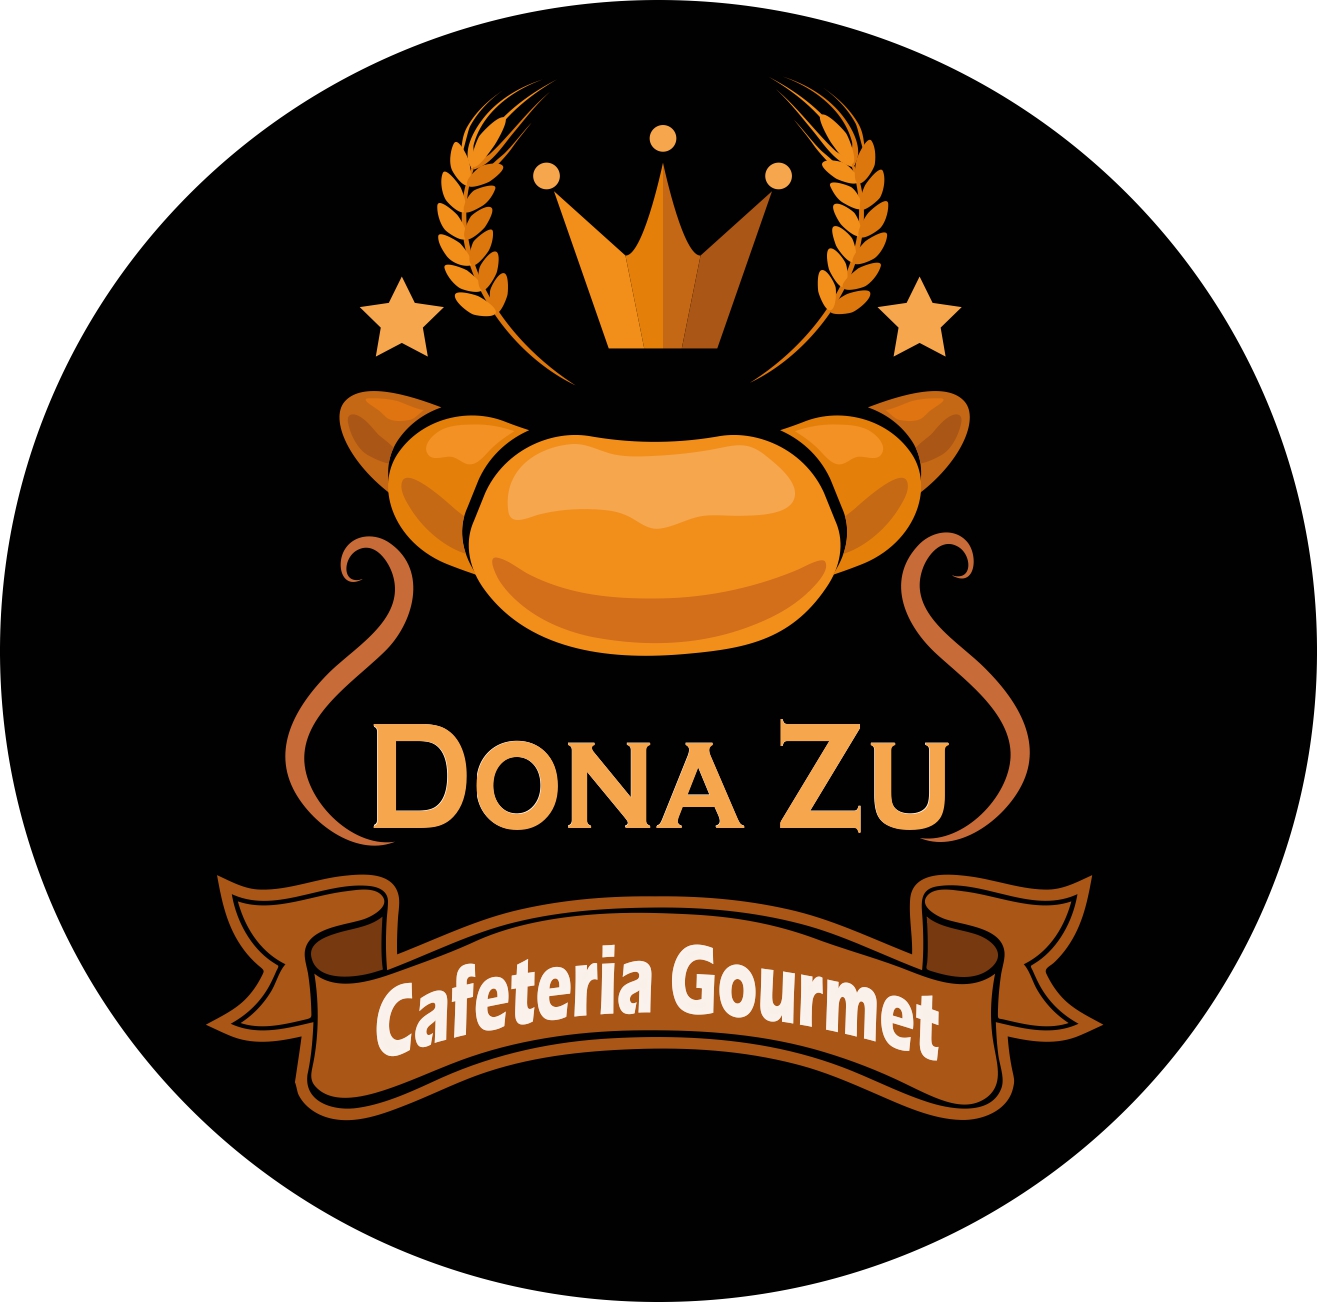 DONA ZU CAFETERIA GOURMET